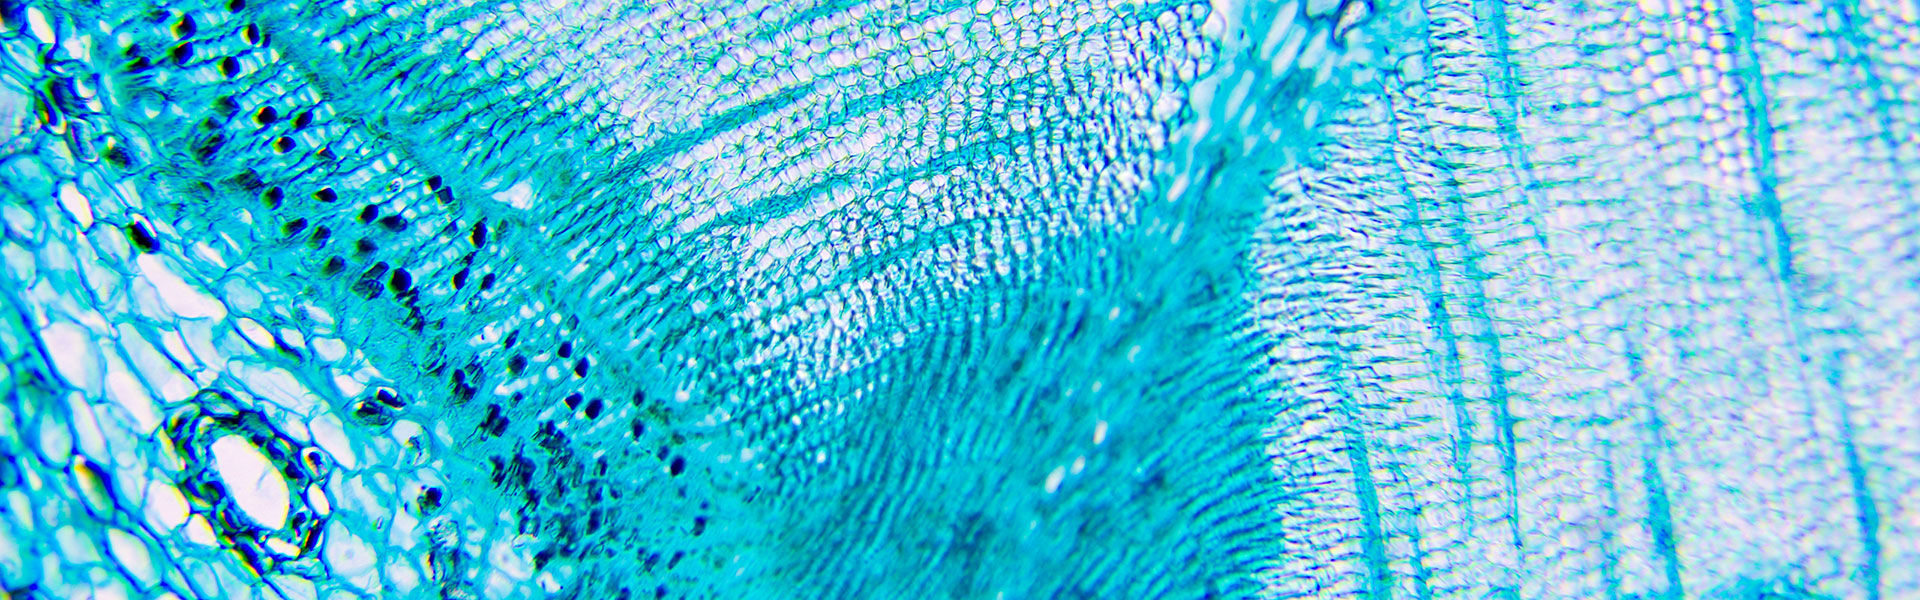 blue-cells-closeup